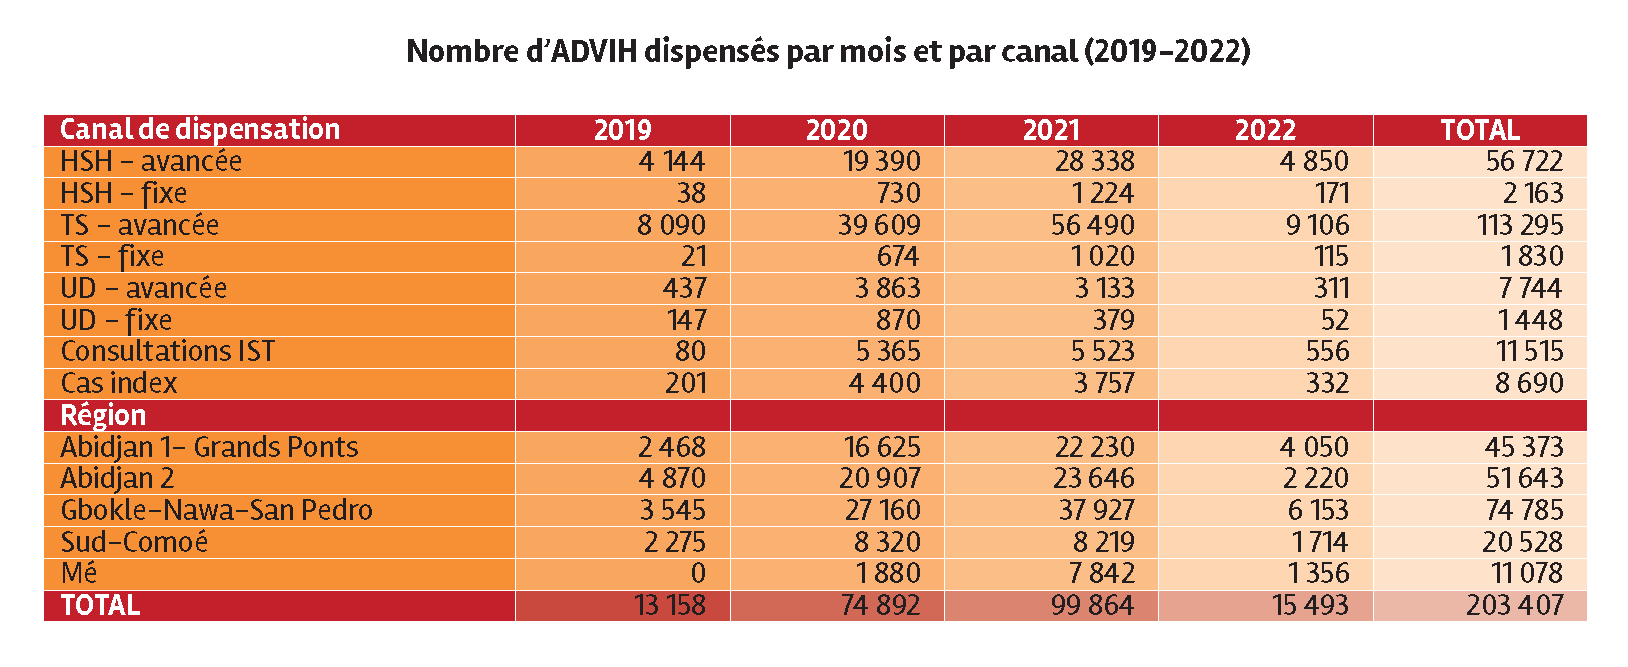 Nombre d'ADVIH dispensés par mois et par canal (2019-2022) en Côte d'Ivoire